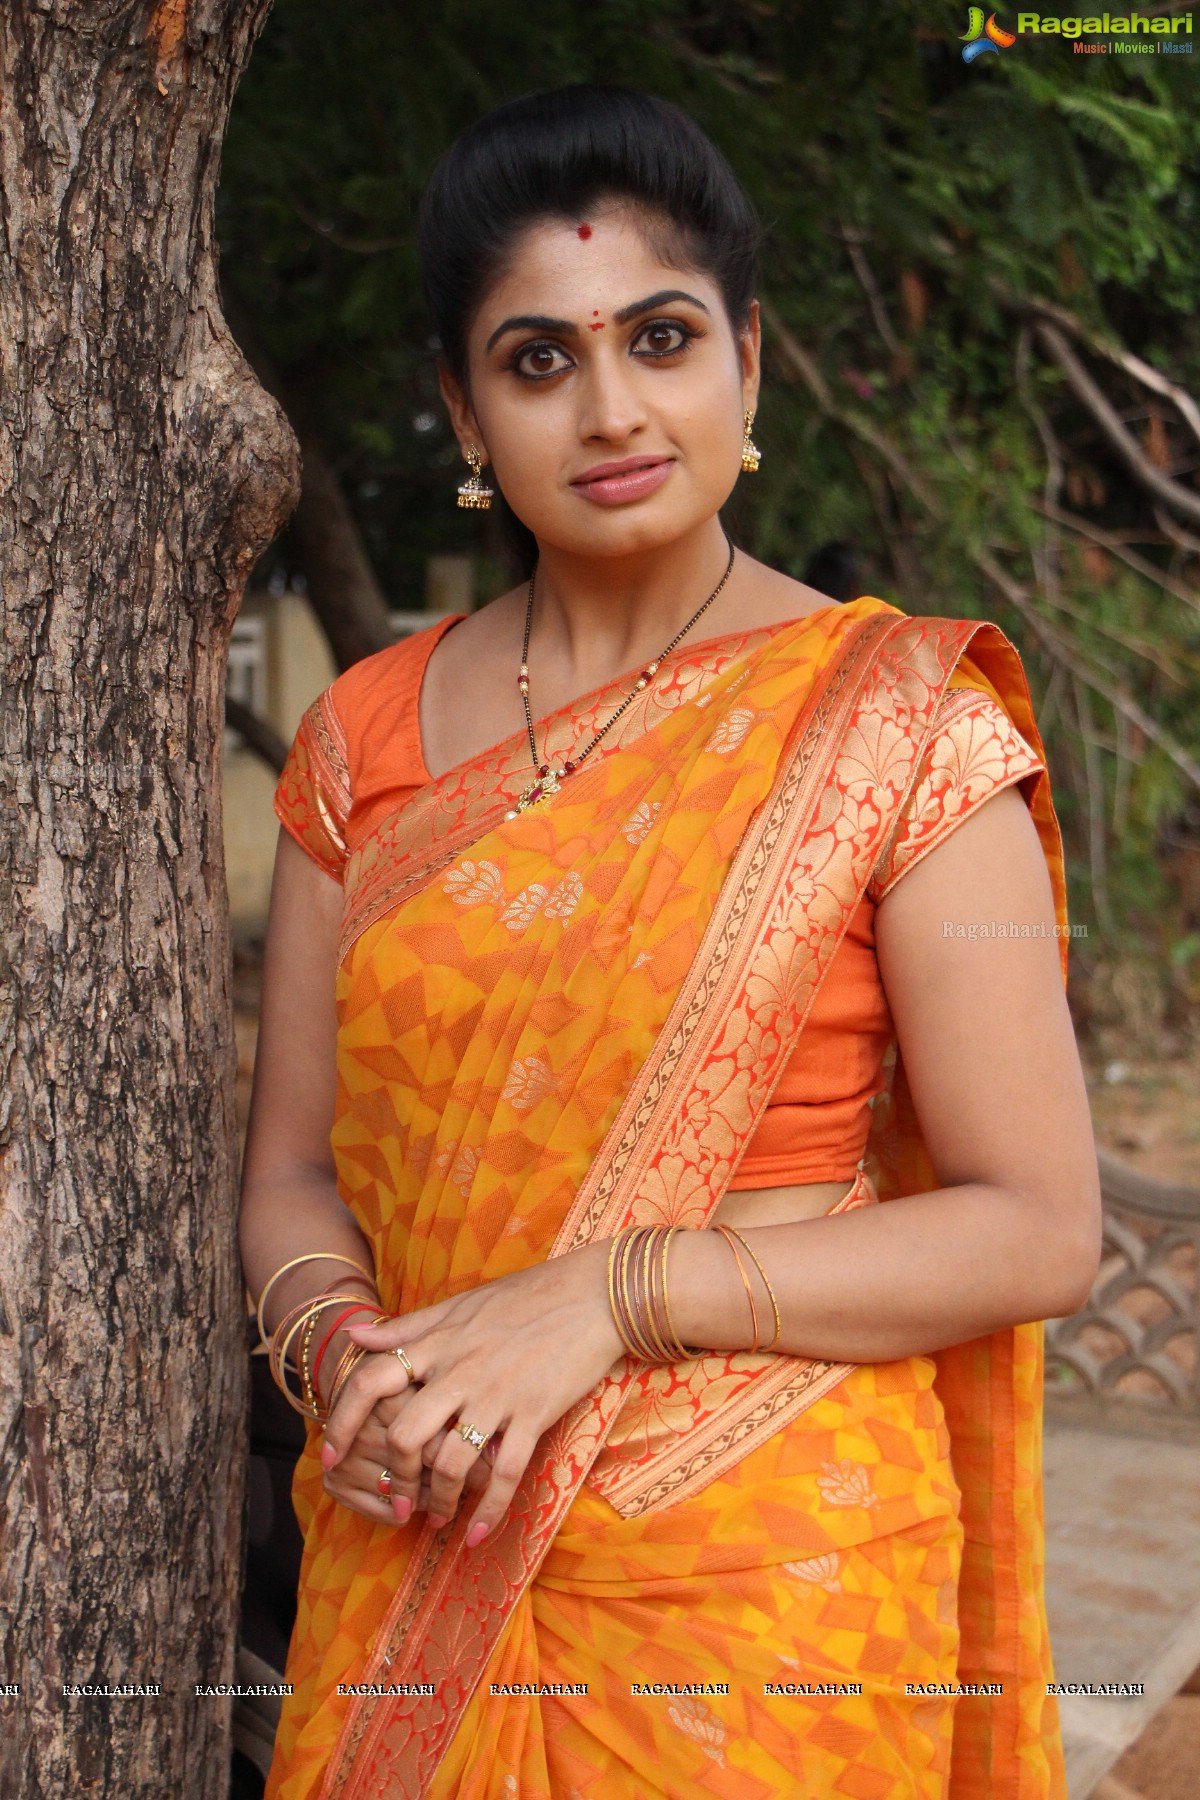 Chaitraa Rai